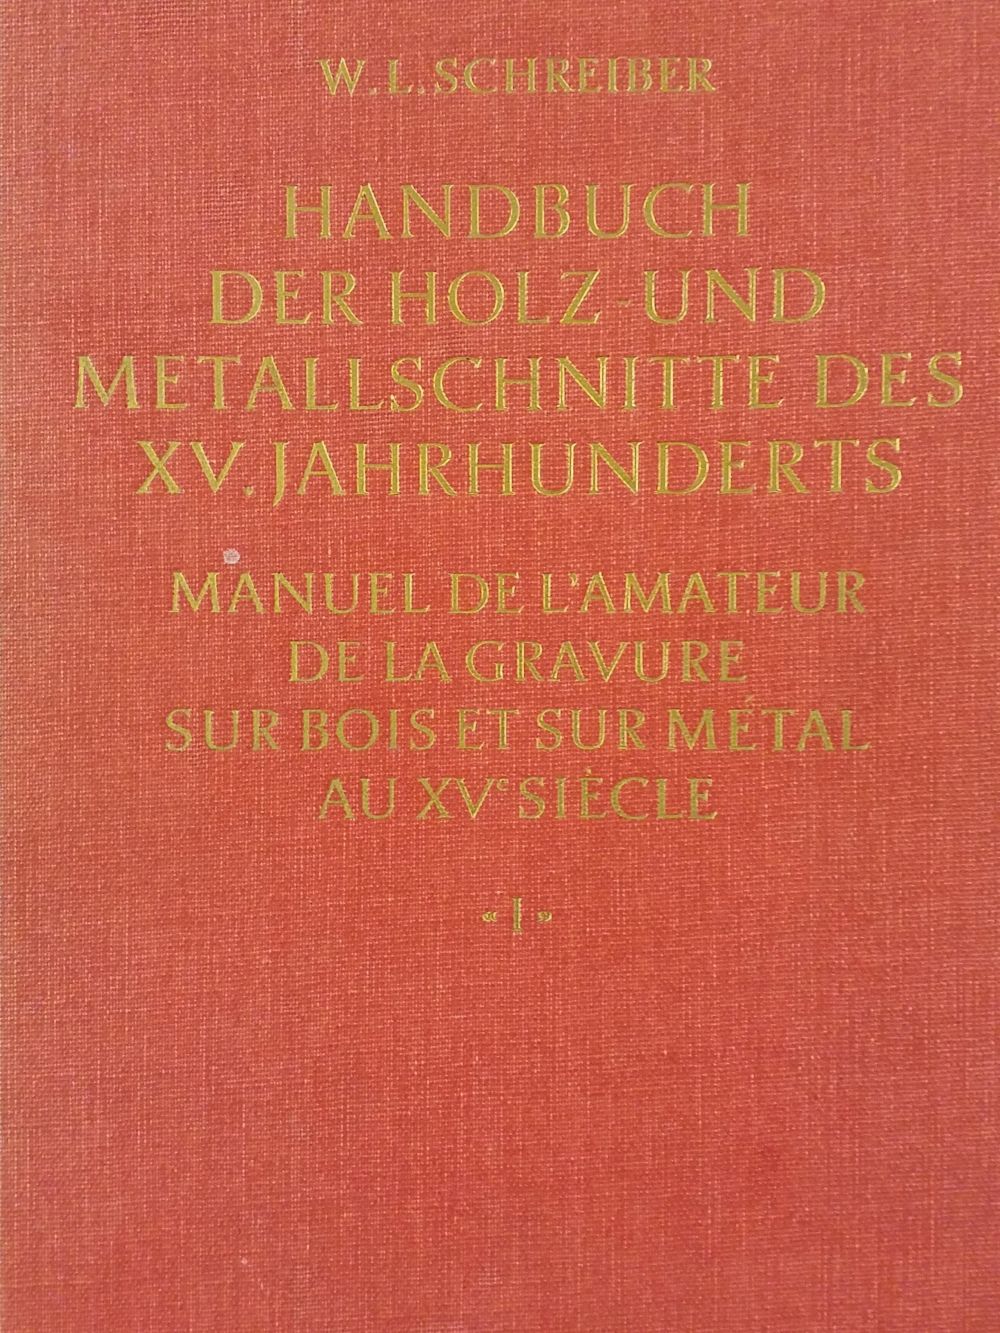 Schreiber (W. L.). Handbuch der Holz- und Metallschnitte does XV. Jahrhunderts, 11 volumes, 1969